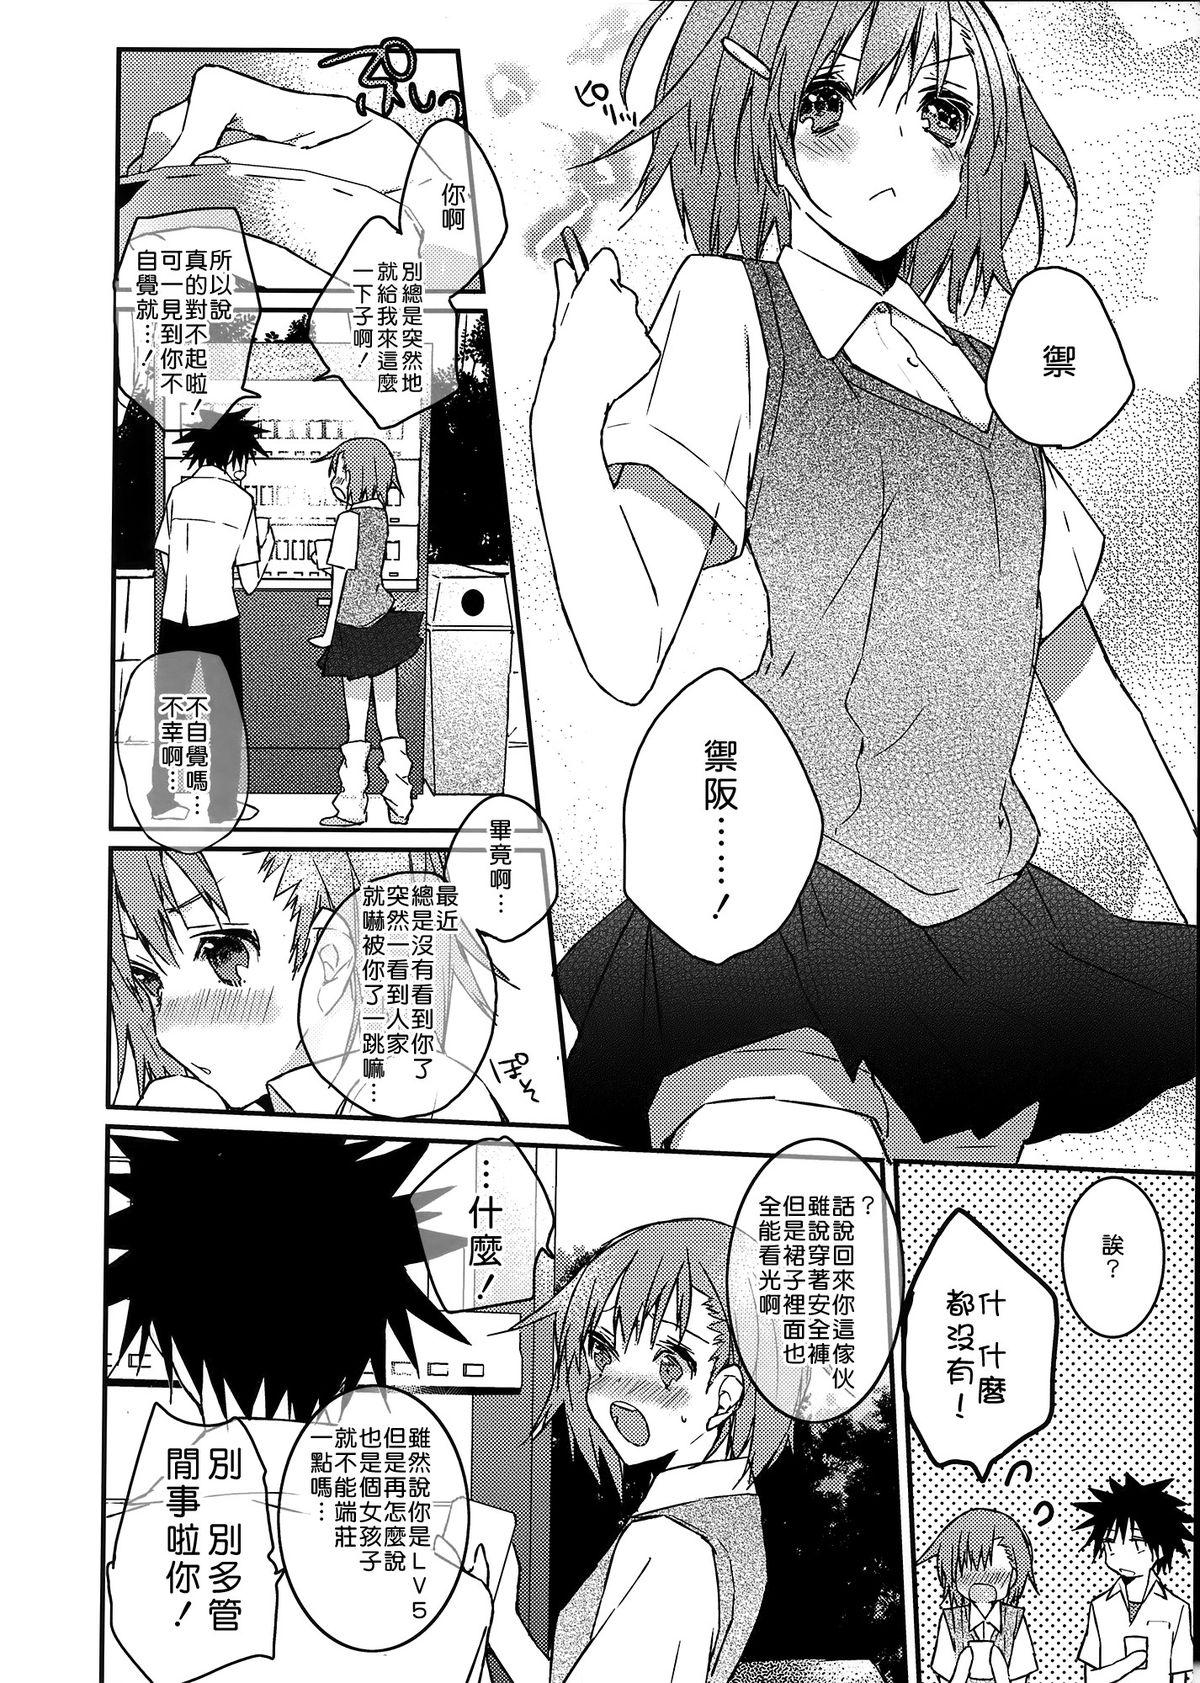 Masterbate Mikoto to. 1 - Toaru kagaku no railgun Toaru majutsu no index Sexy Girl Sex - Page 7